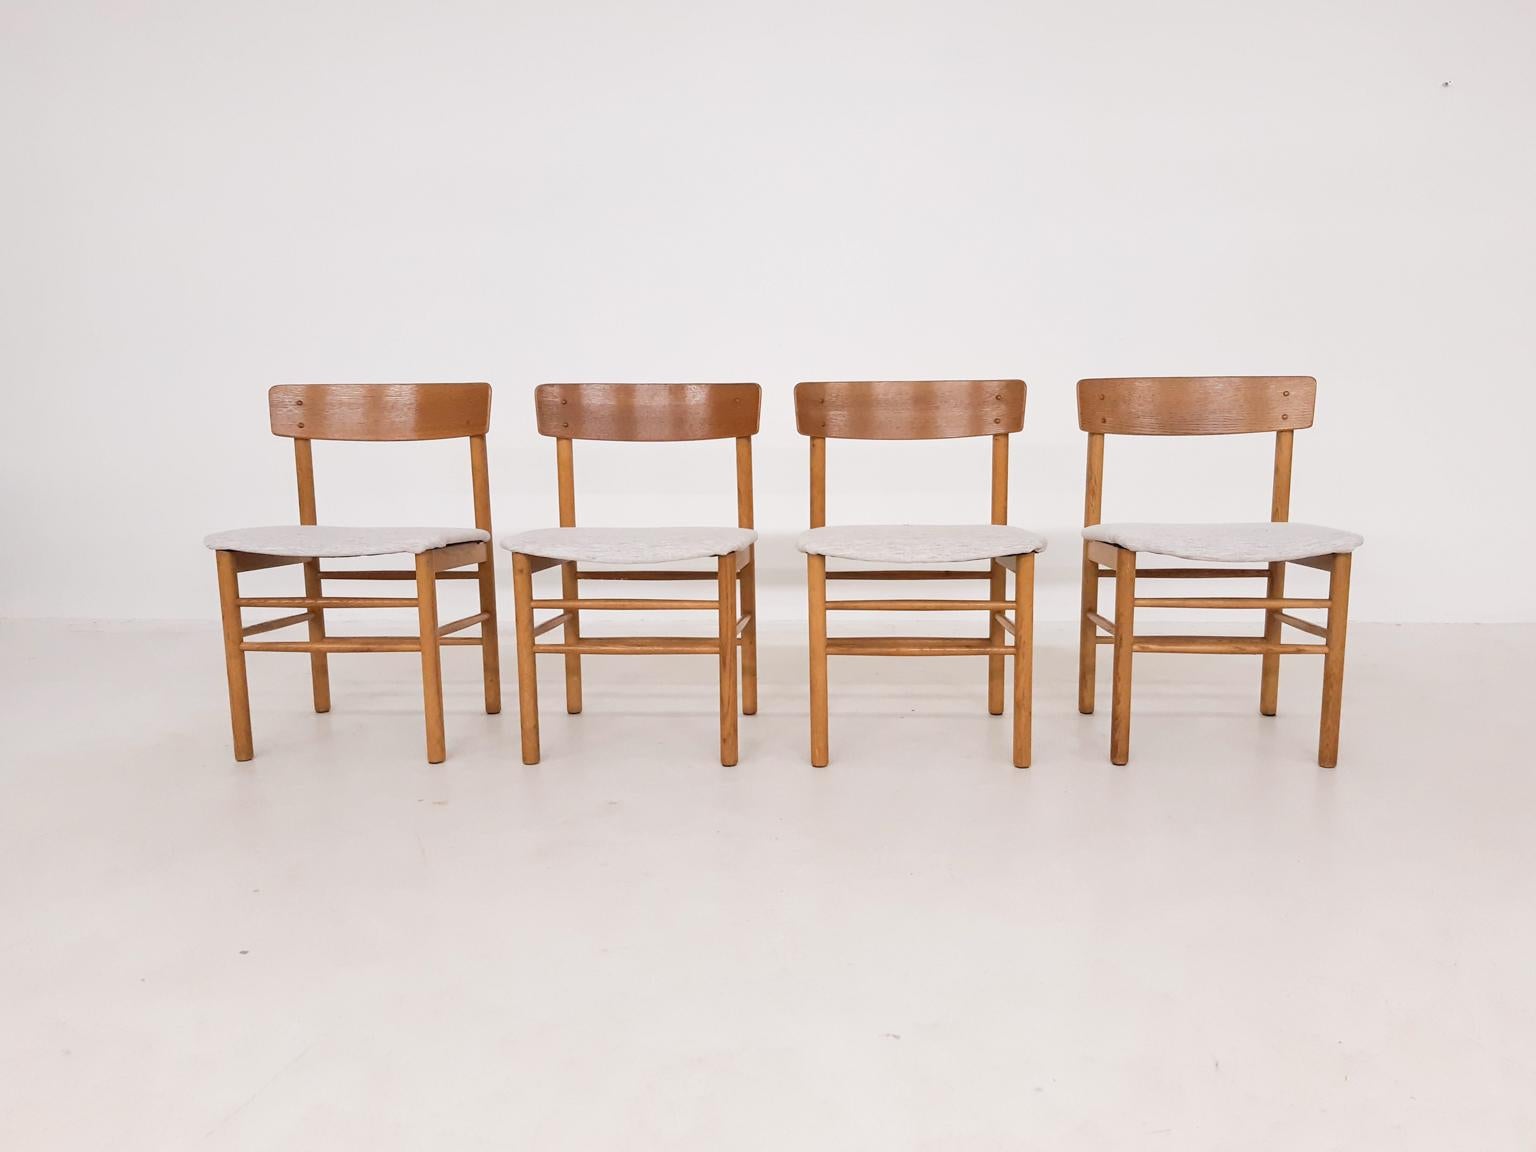 Ein Satz von 4 Esszimmerstühlen aus Eiche im Stil von Børge Mogensens J39 Shaker-Stuhl.
Hergestellt in Dänemark in den 1960er Jahren. Die Stühle sind dem J39 Stuhl von Mogensen sehr ähnlich und passen hervorragend zu jedem Esstisch aus der